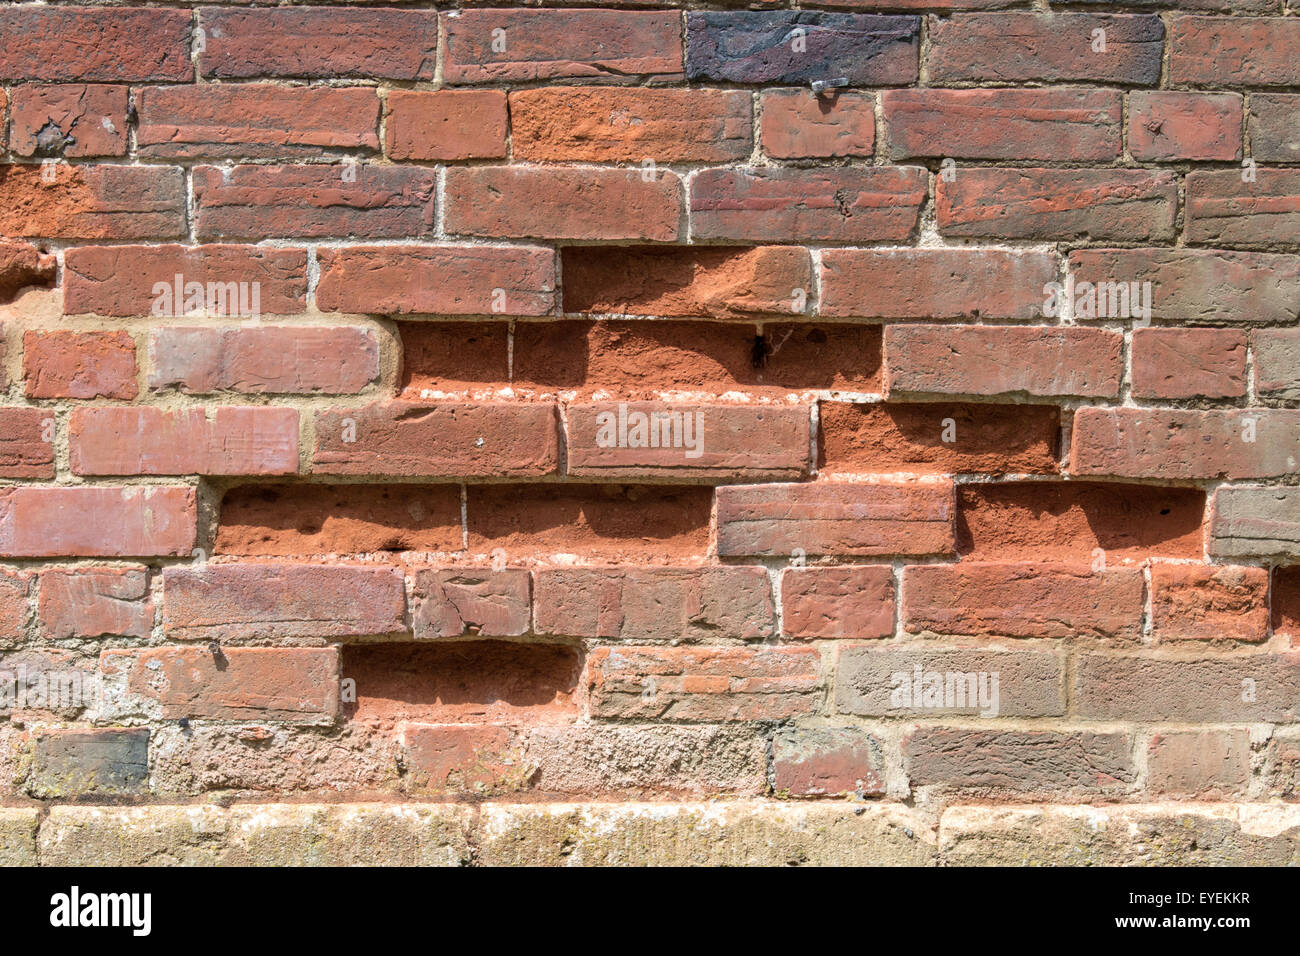 Eroded brickwork Stock Photo